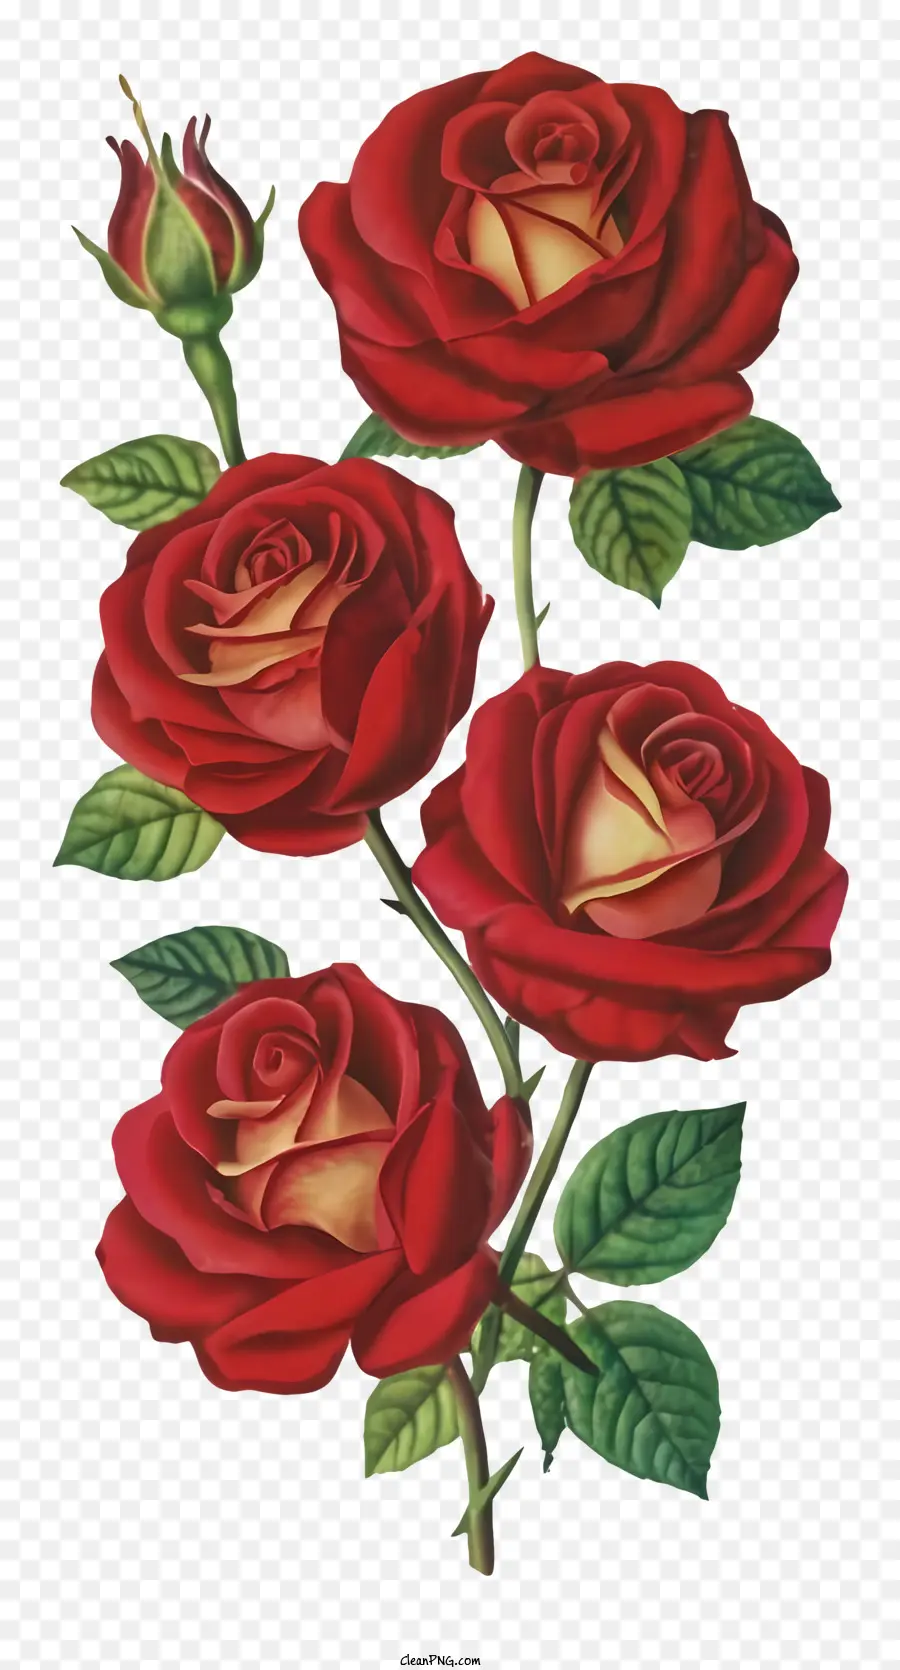 Rose Rosse - Rose rosse con foglie verdi disposte a spirale